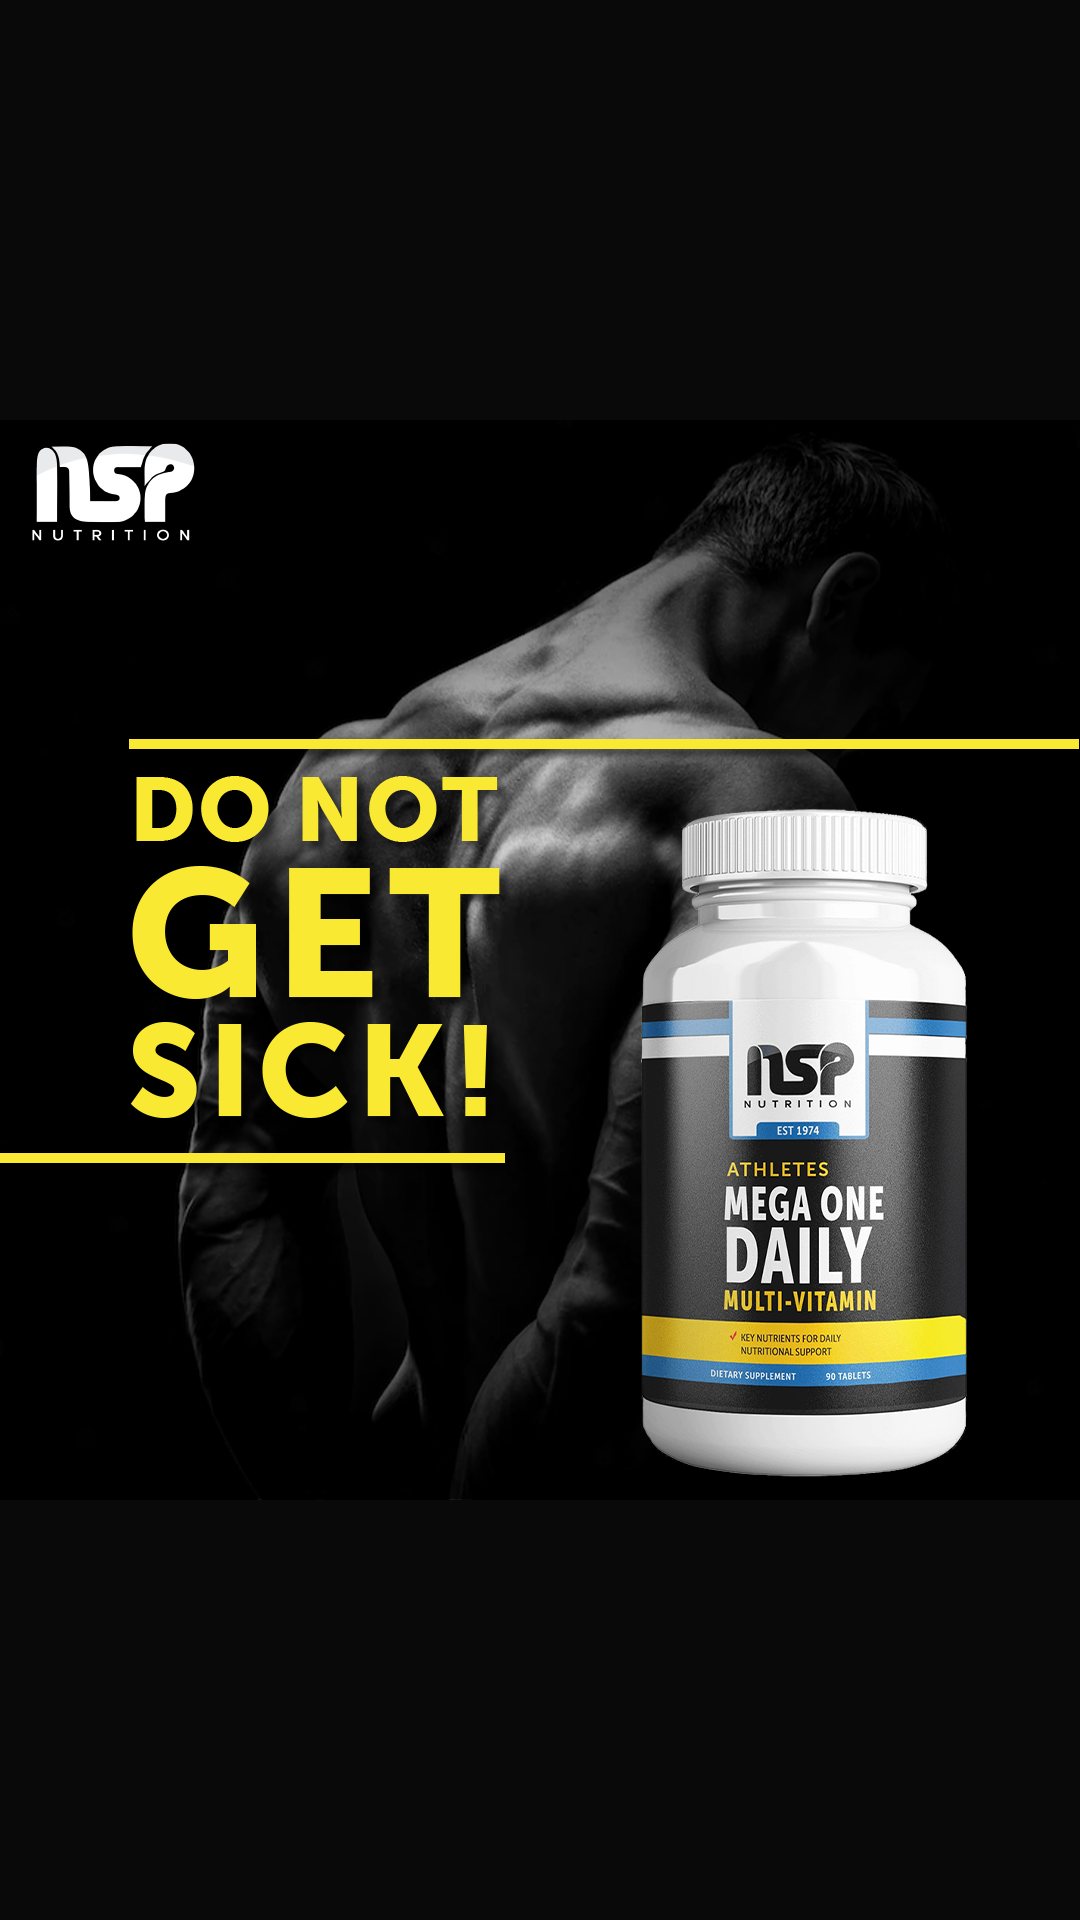 NSP Nutrition Athlete Mega One Daily